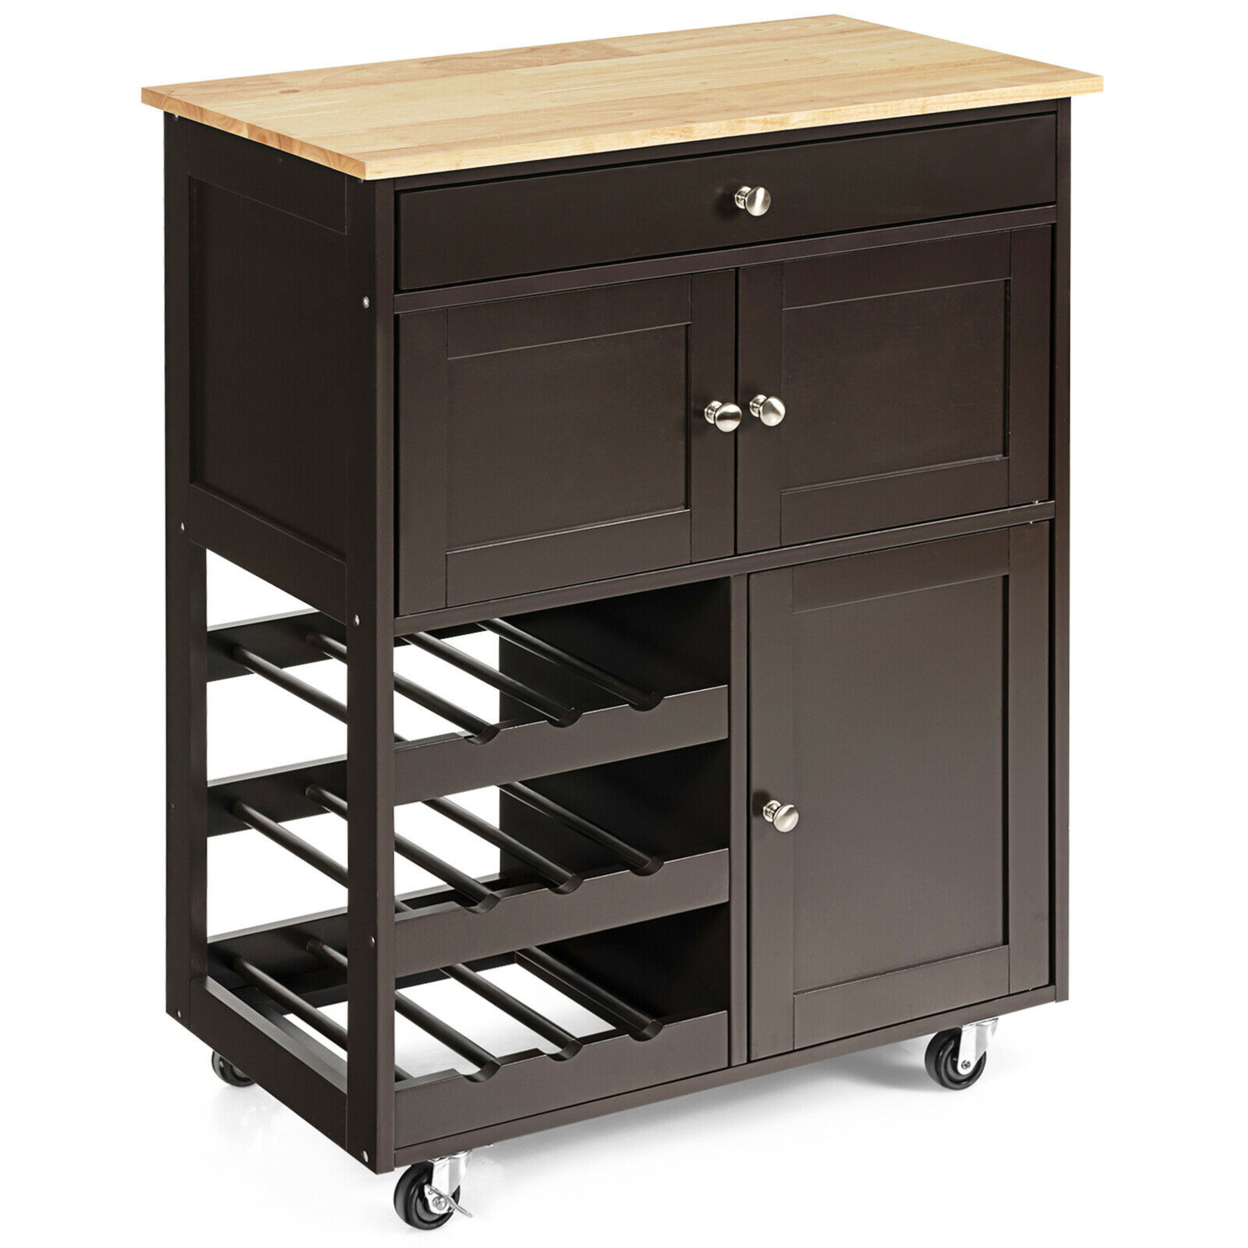 Rolling Kitchen Island Serving Cart Storage Cabinet W/ Wine Rack - Brown